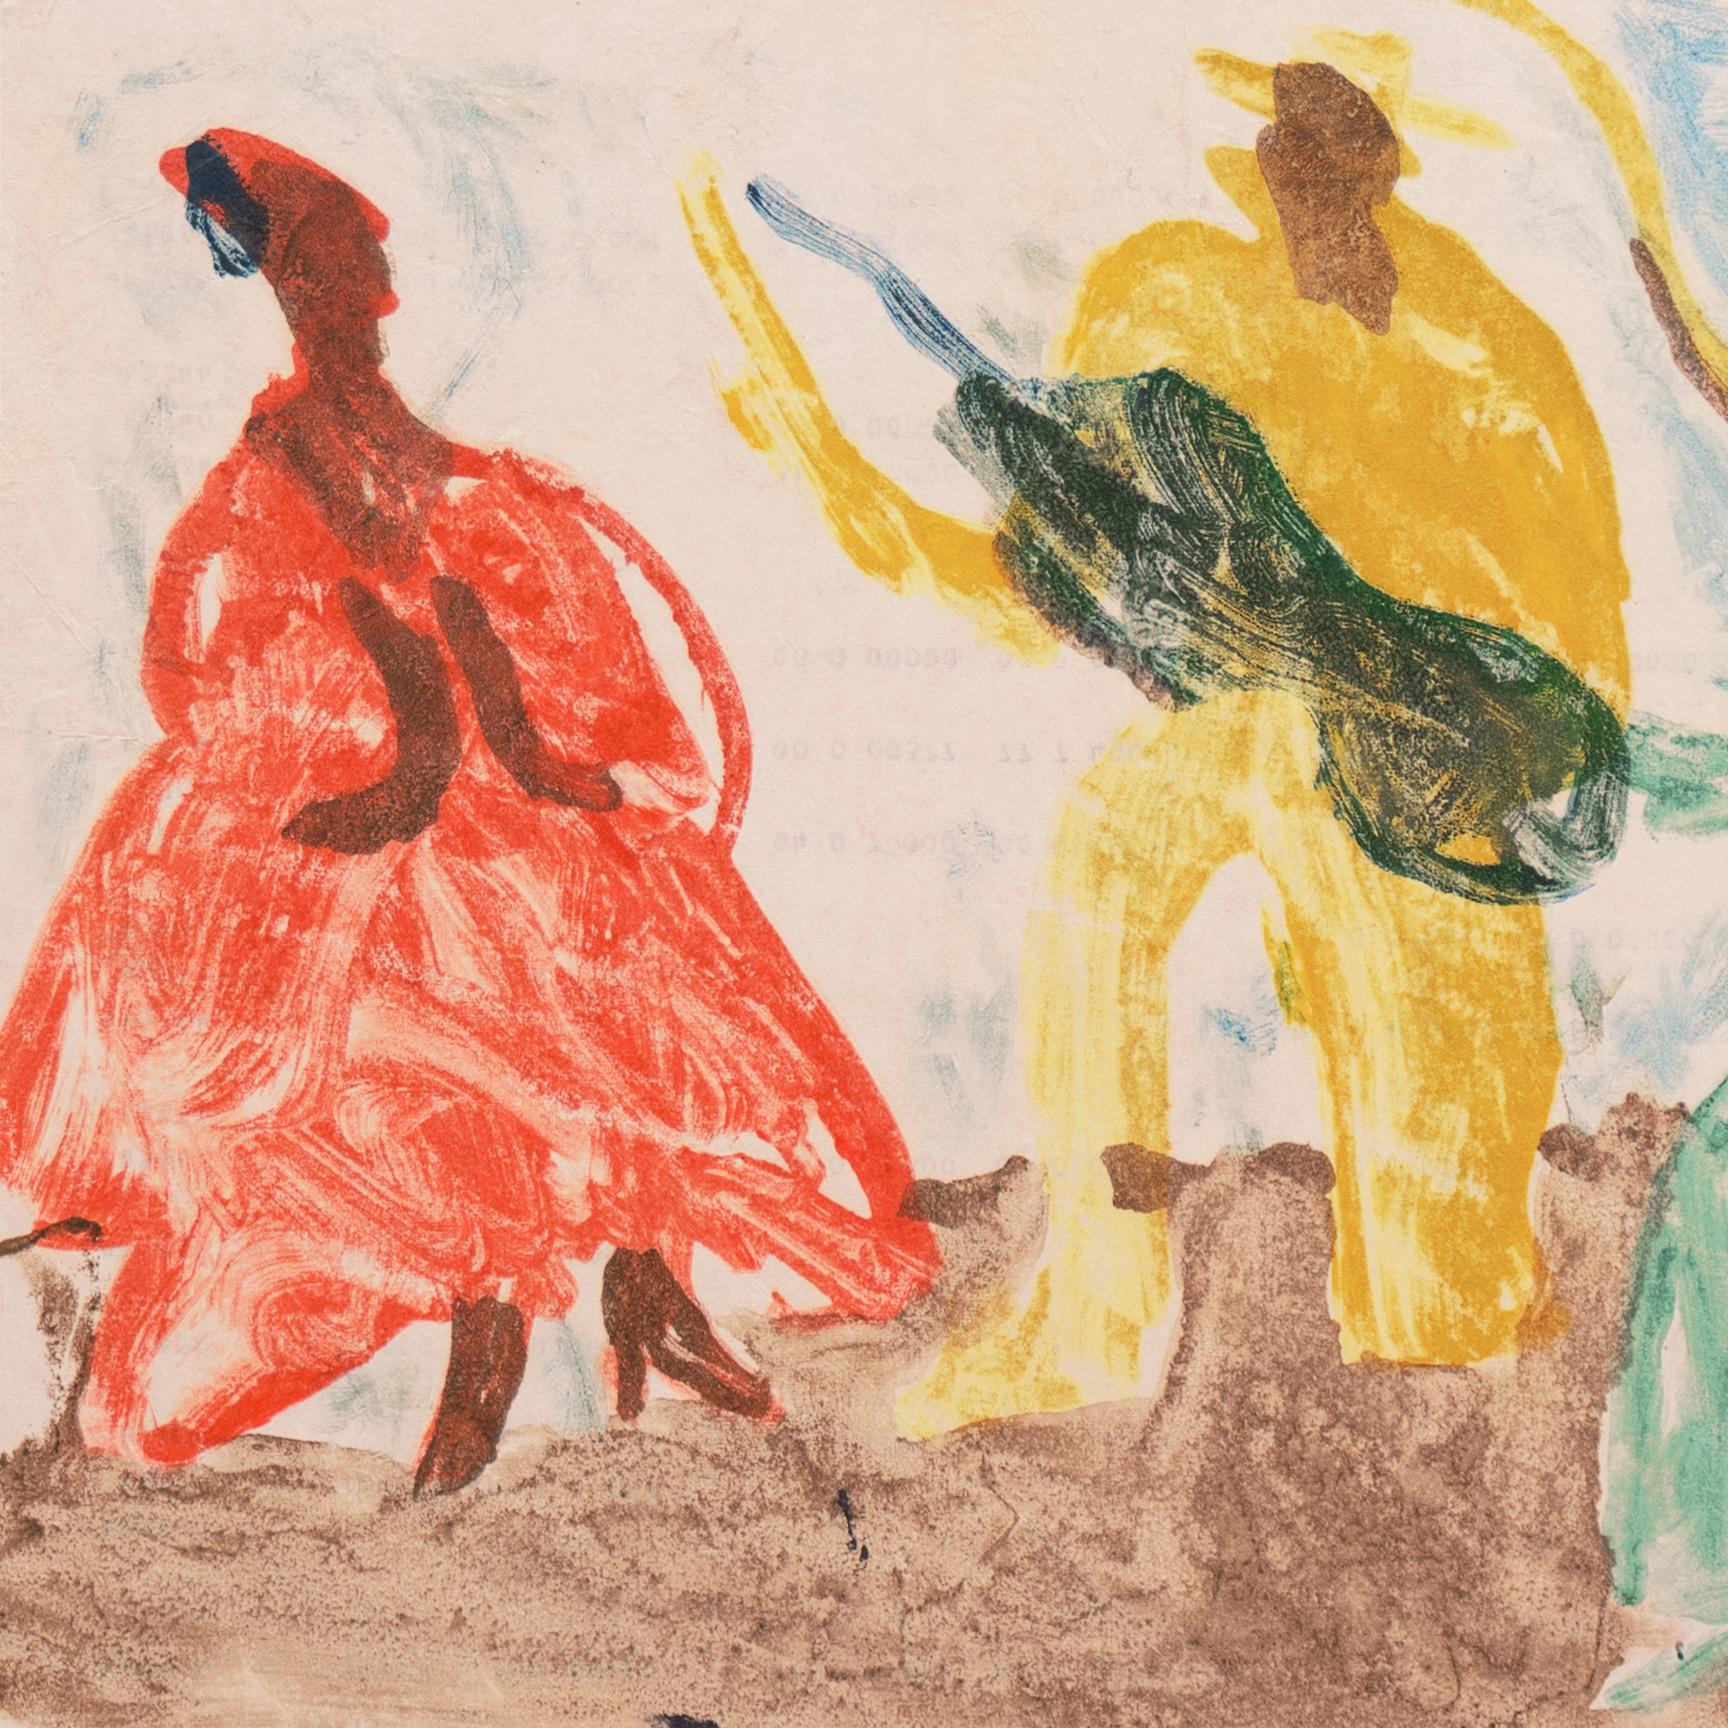 'Flamenco', Paris, Louvre, Salon d'Automne, Academie Chaumière, LACMA, SFAA - Post-Impressionist Art by Victor Di Gesu